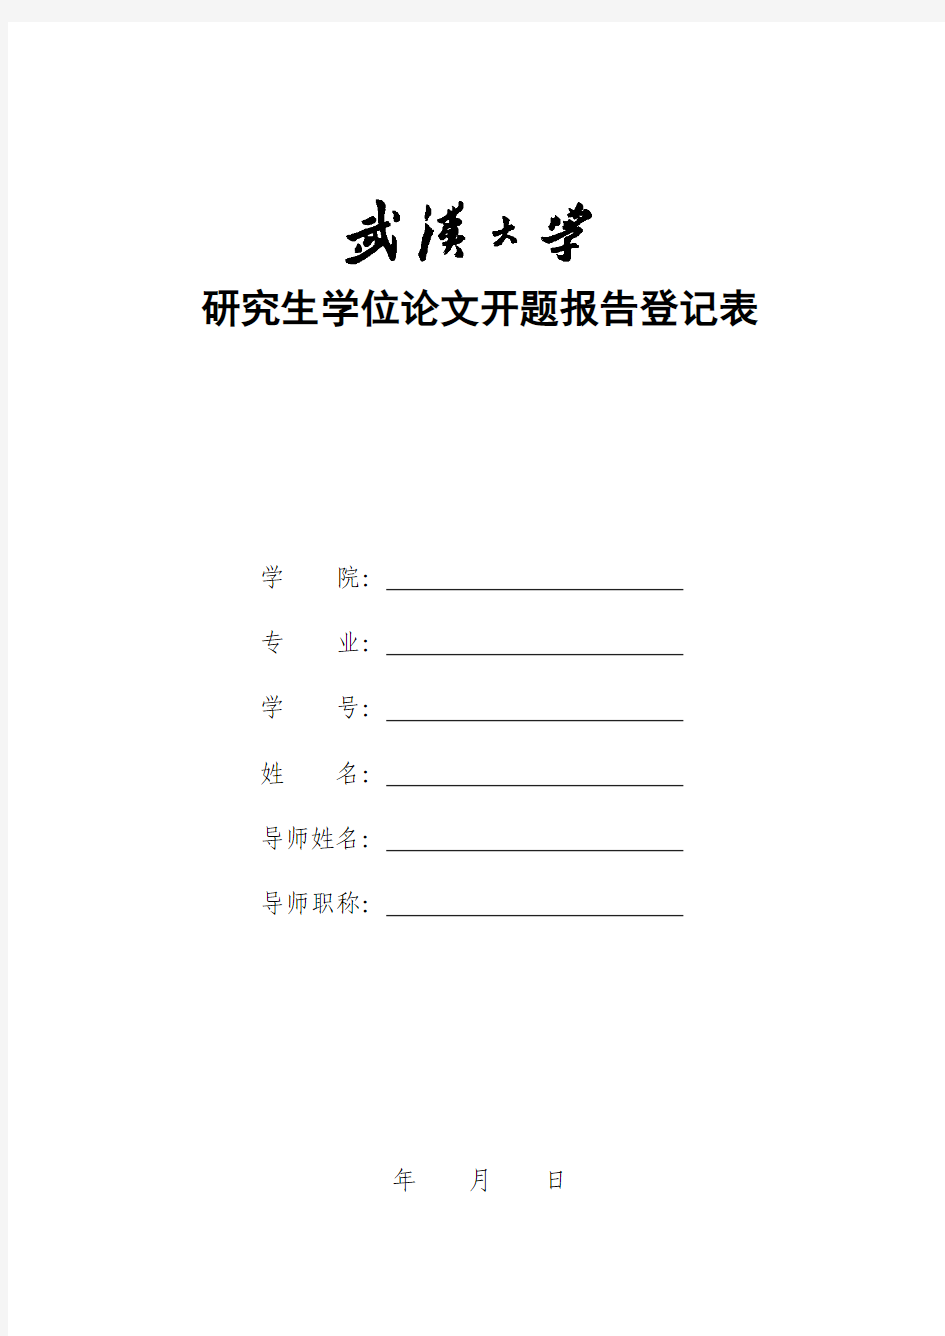 武汉大学开题报告登记表